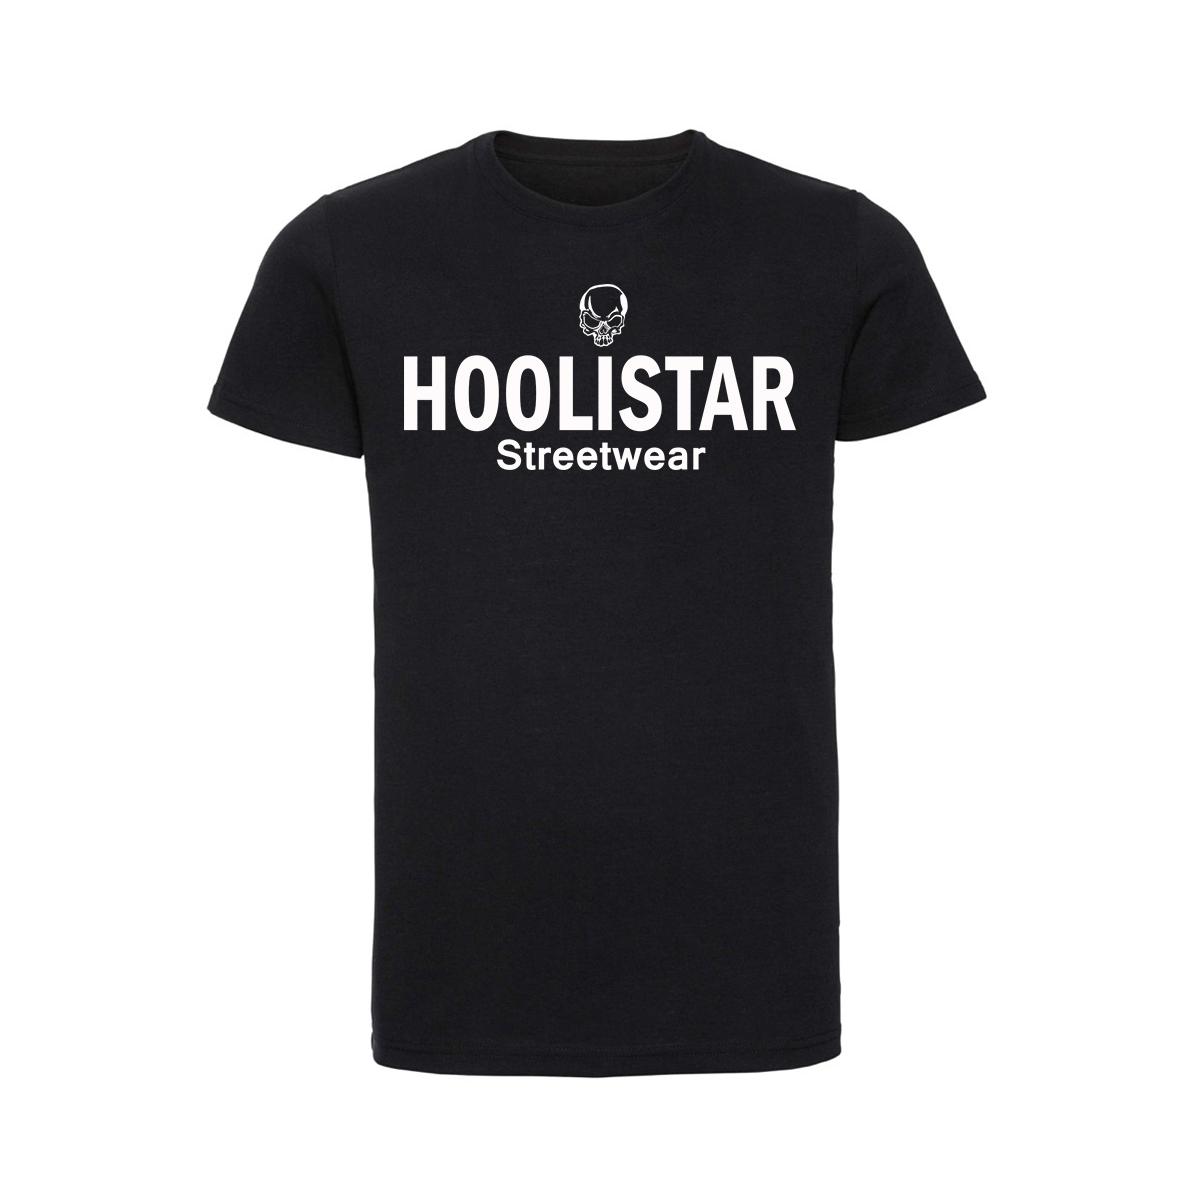 Hoolistar Streetwear - Männer T-Shirt - schwarz